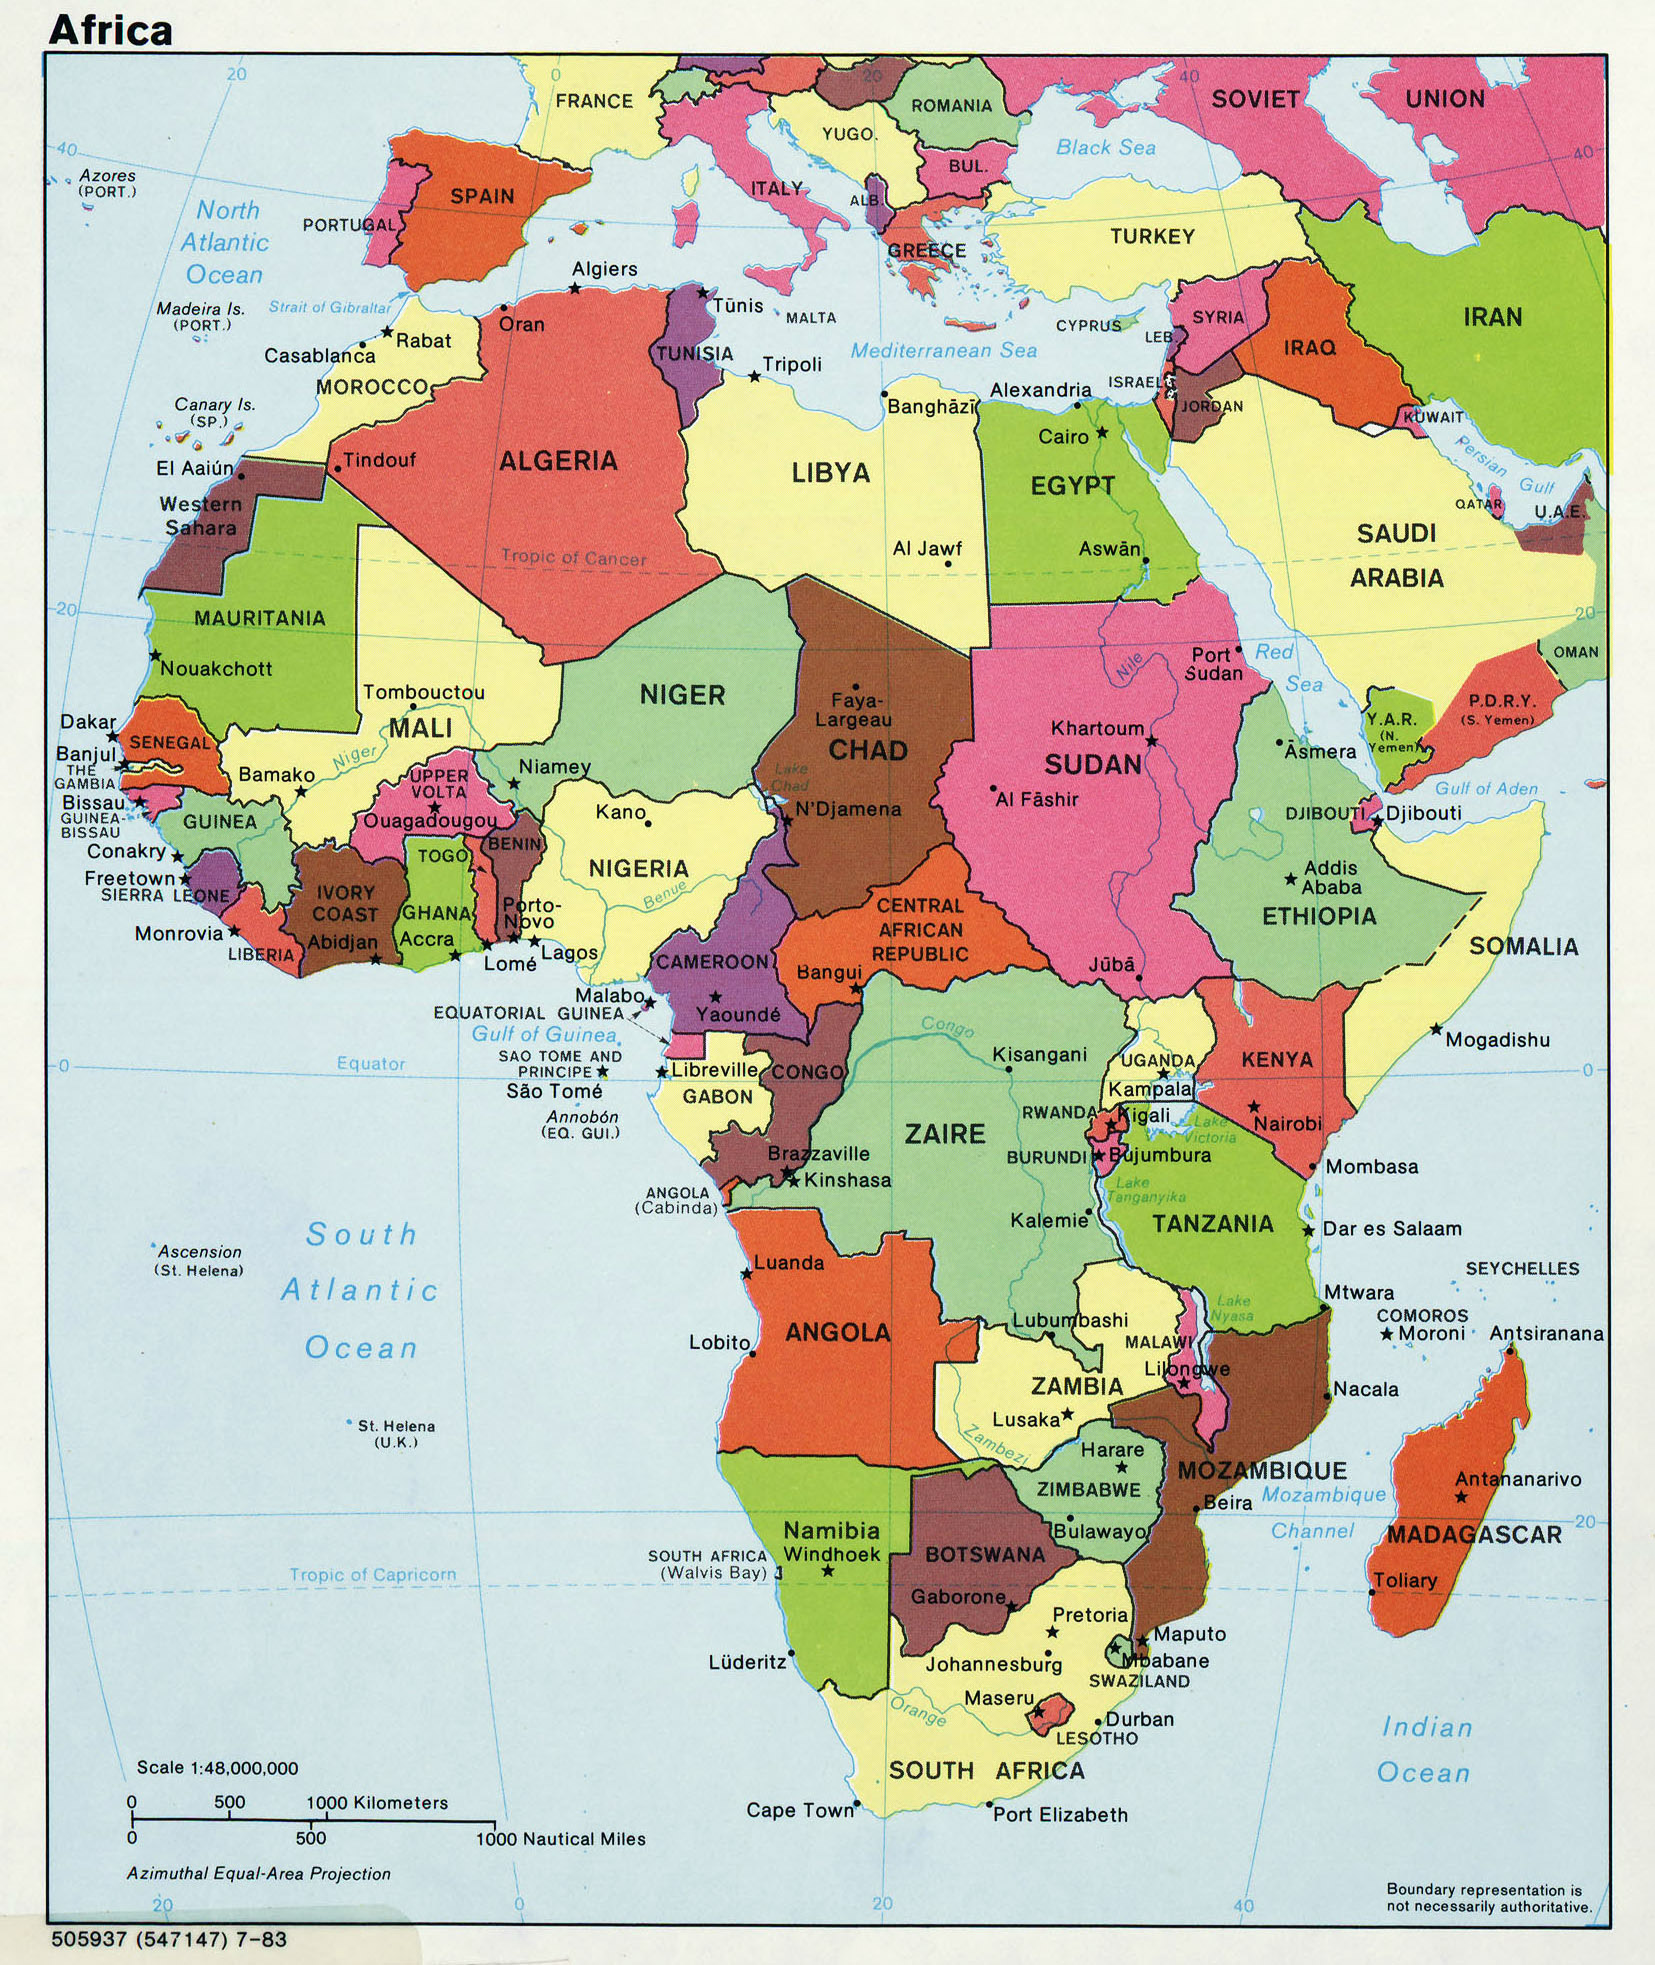 Mapa Politico De Africa Mapa De Paises Y Ciudades De Africa National Images 6985